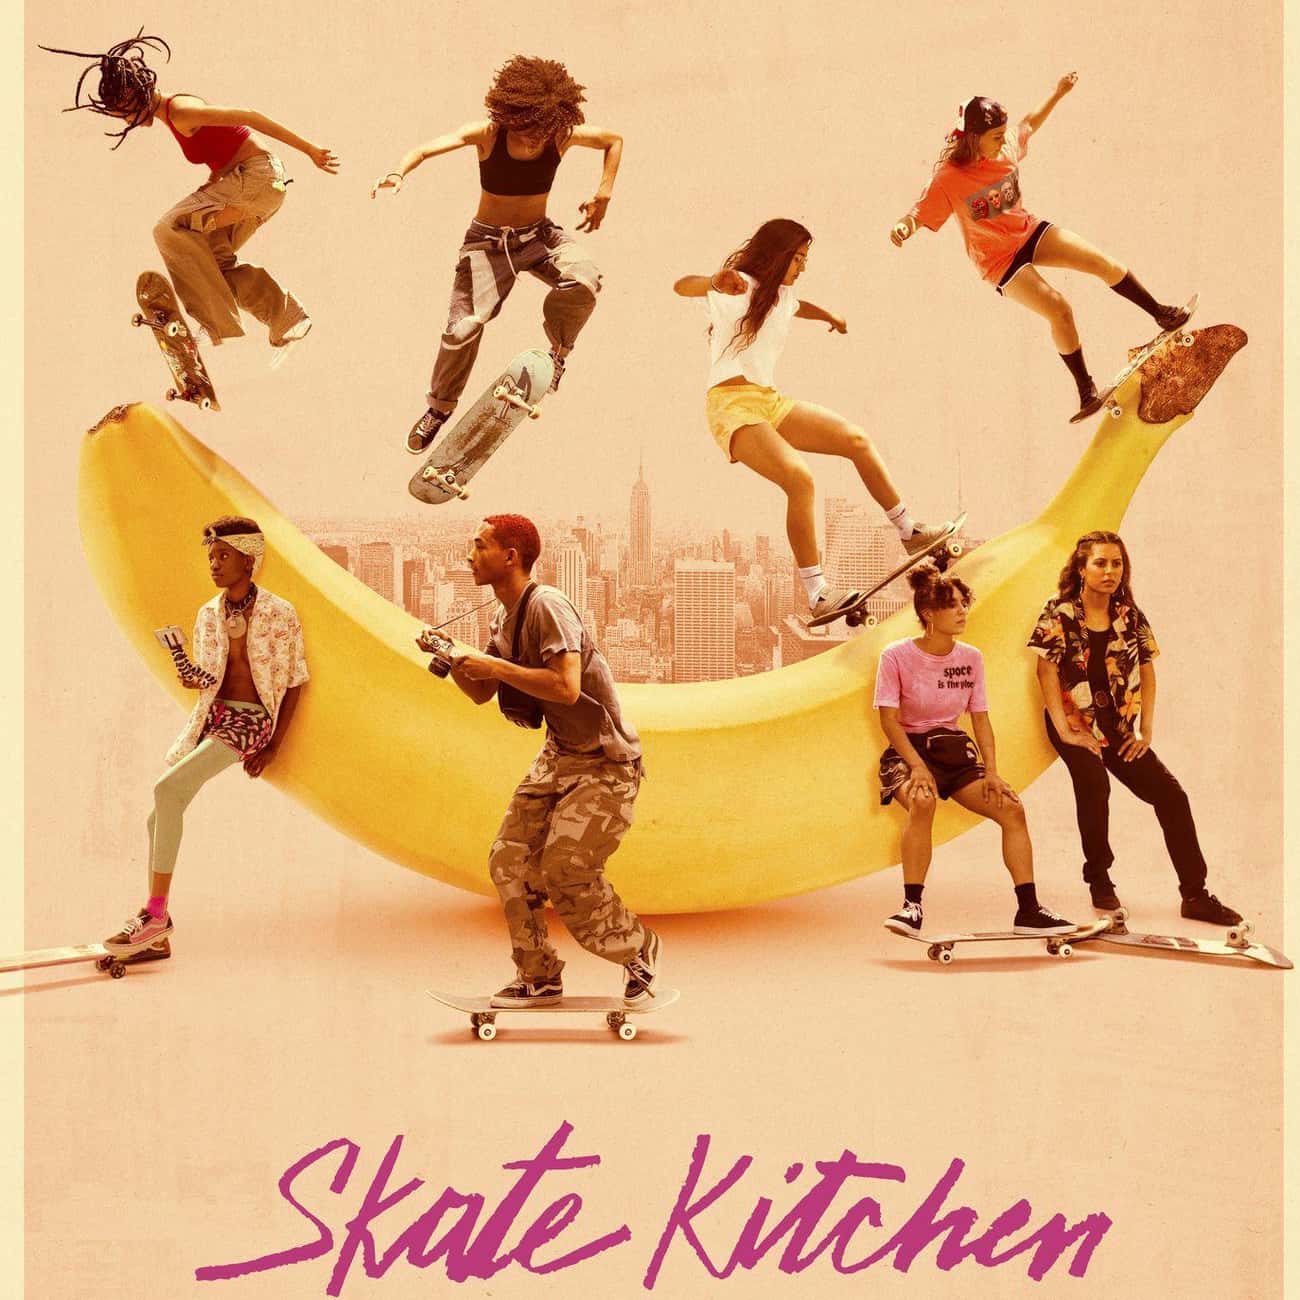 Skate Kitchen